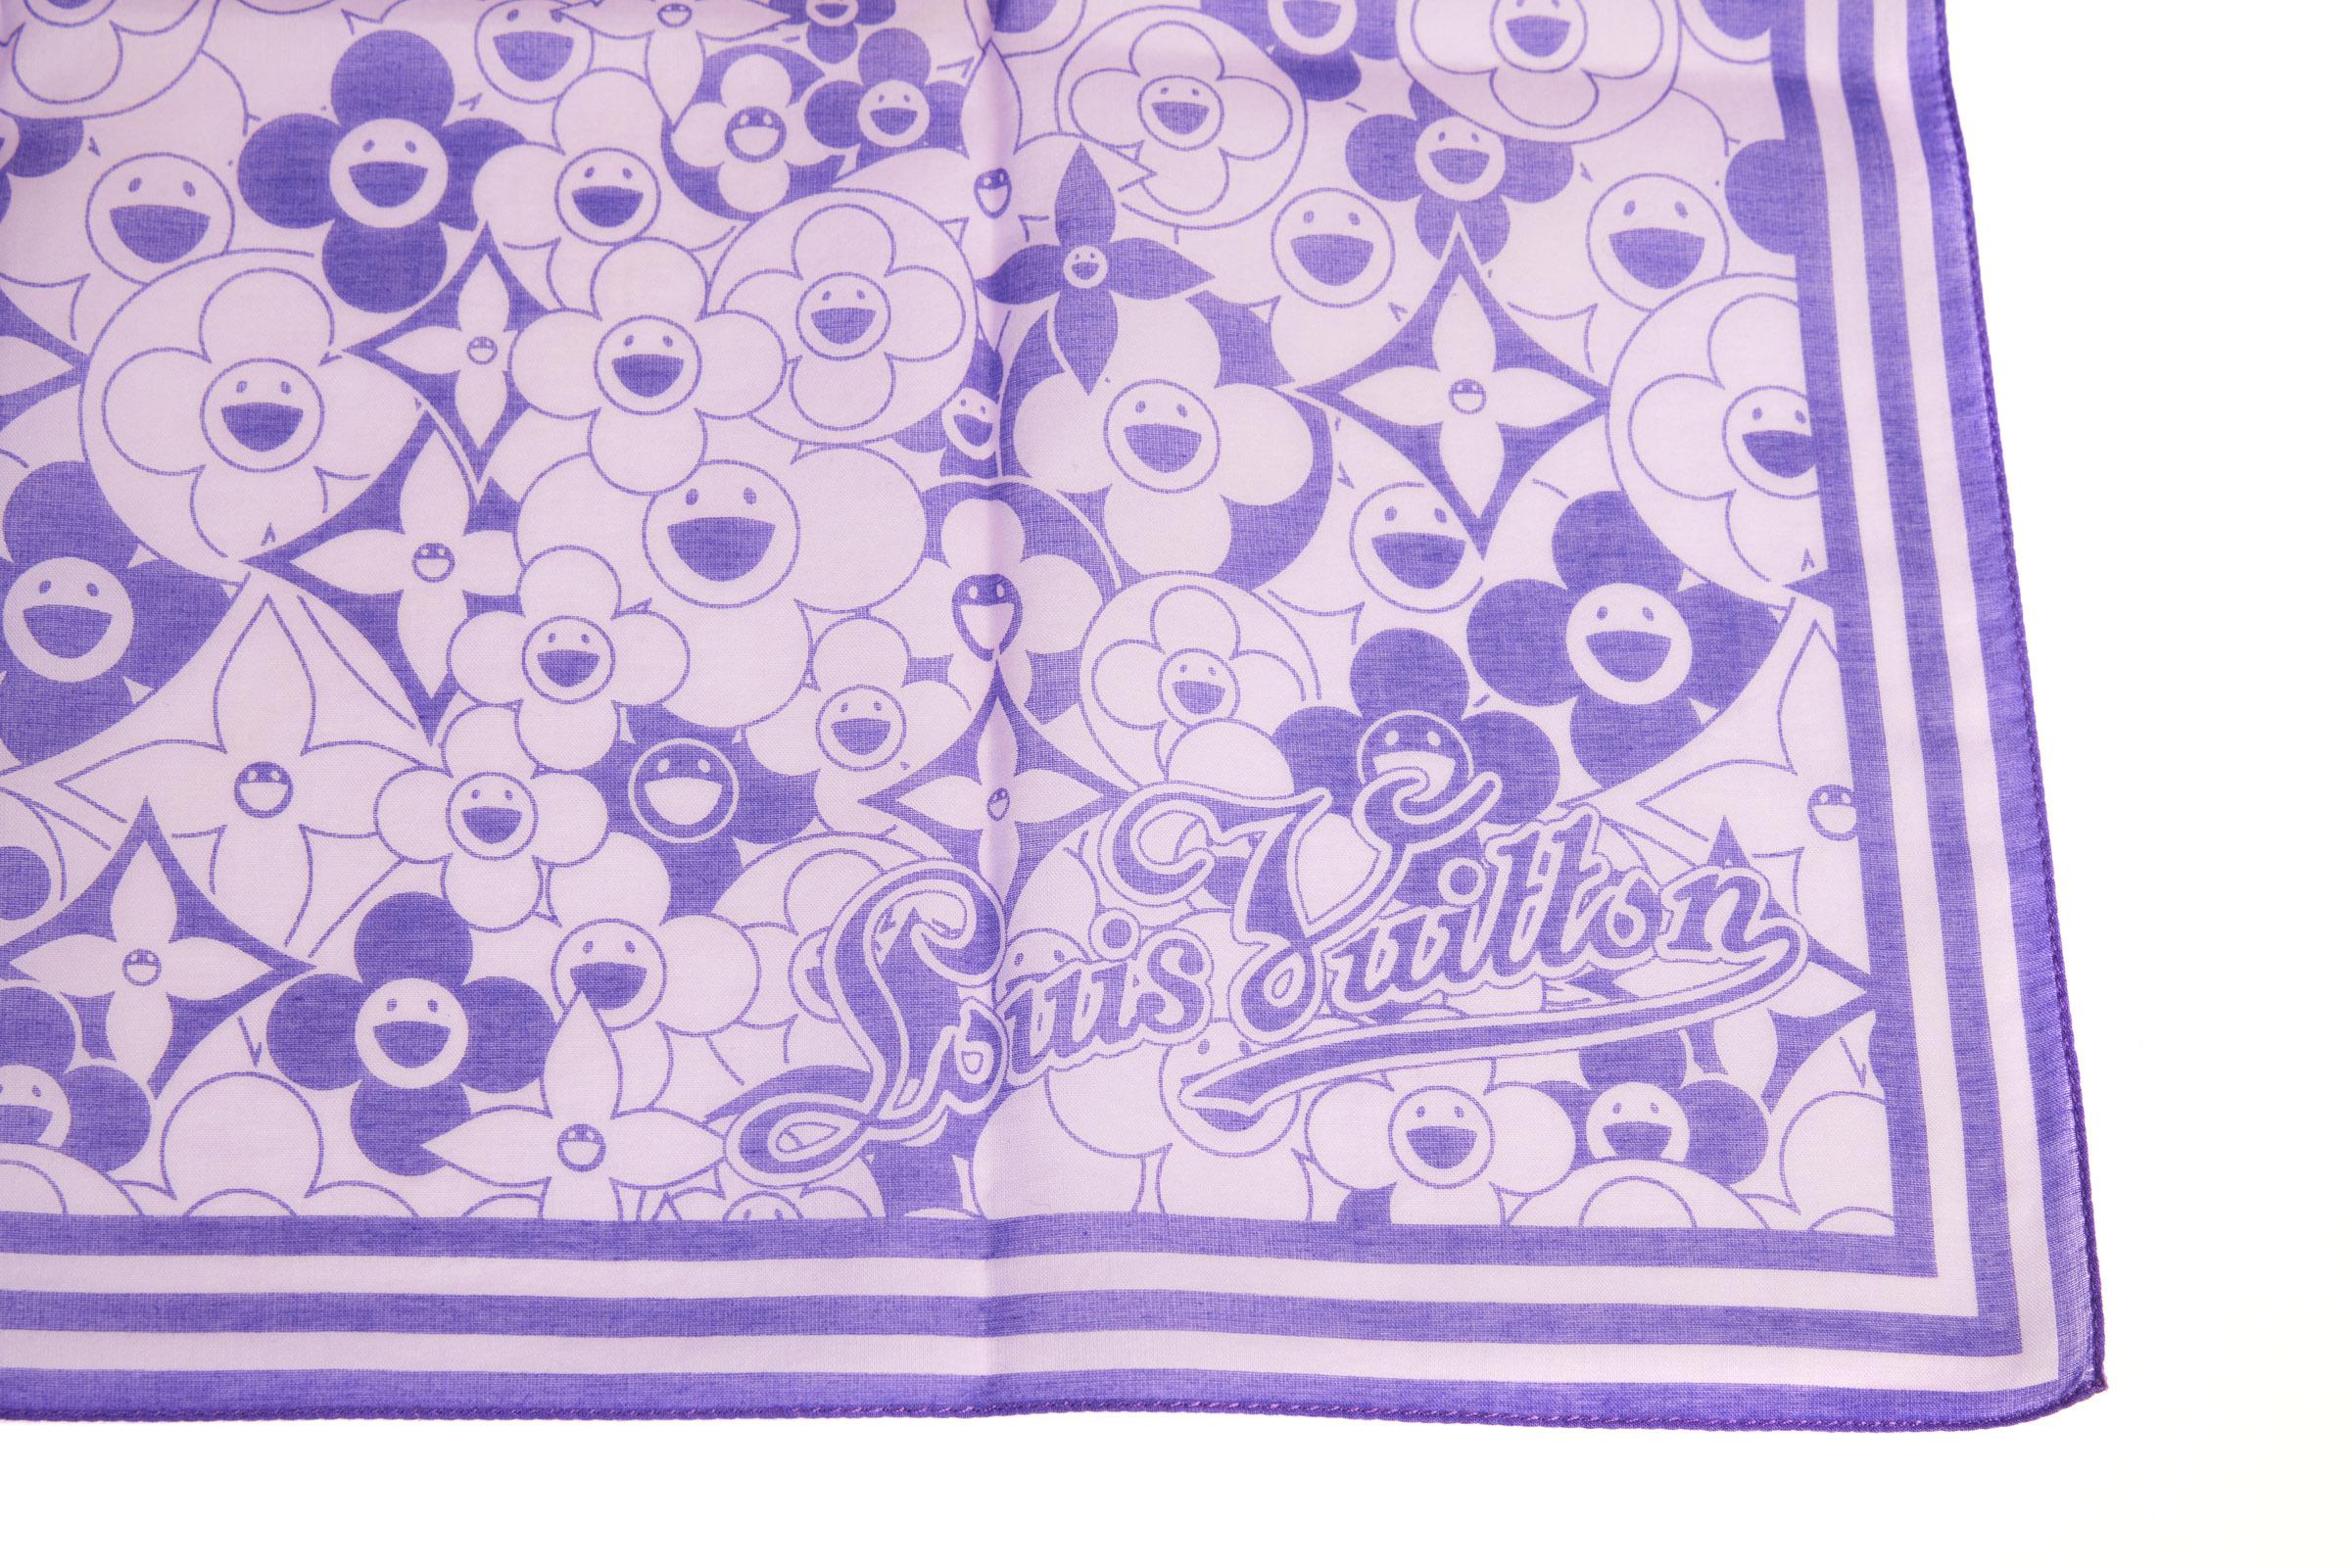 Louis Vuitton Purple Scarves & Wraps for Women for sale